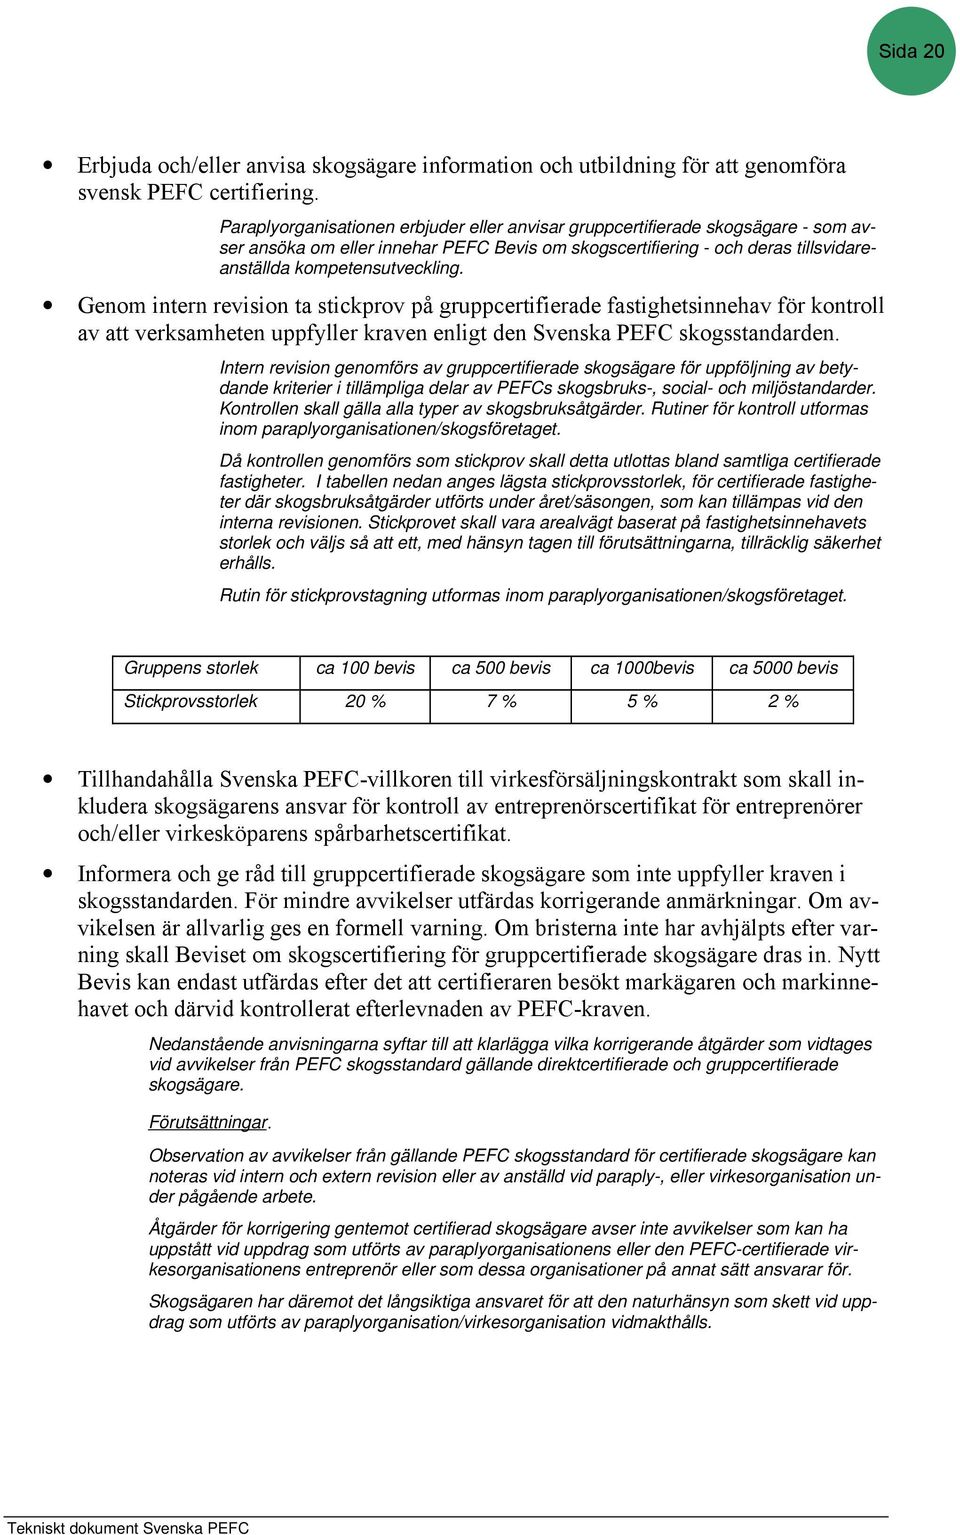 Genom intern revision ta stickprov på gruppcertifierade fastighetsinnehav för kontroll av att verksamheten uppfyller kraven enligt den Svenska PEFC skogsstandarden.